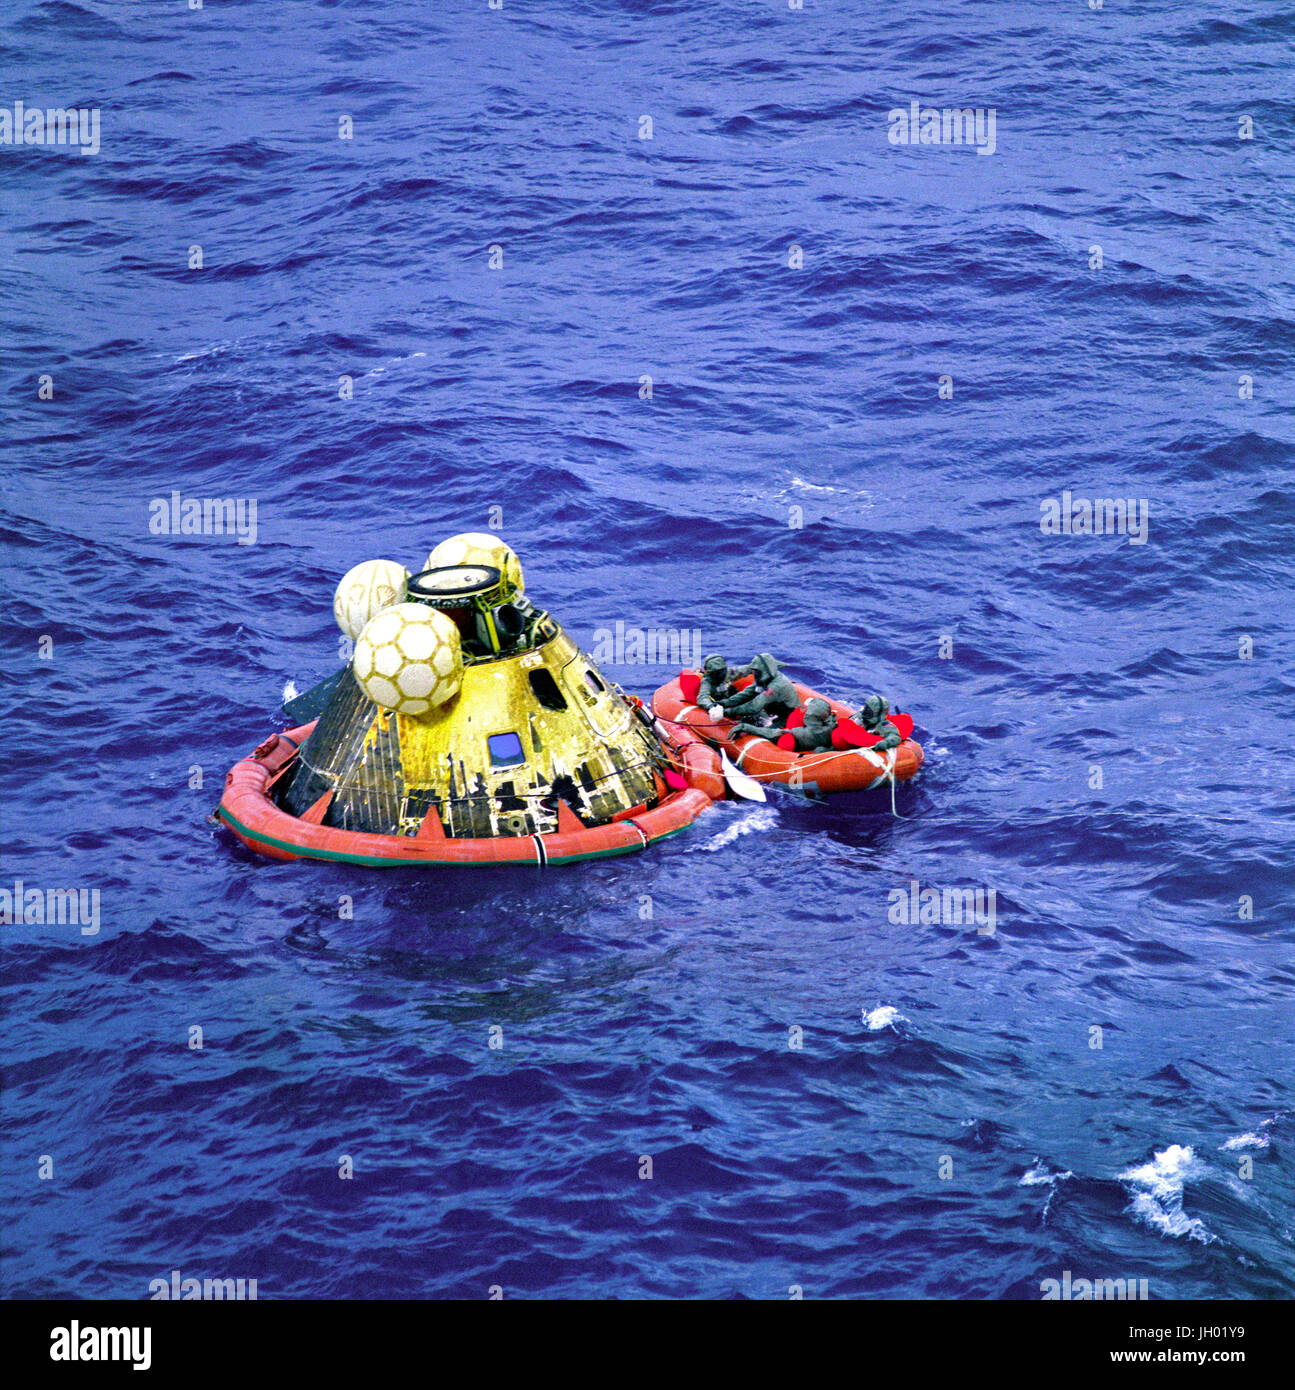 Die Apollo 11 Crew warten auf Abholung von einem Hubschrauber von der USS Hornet, erstklassige Erholung Schiff für die historische Mission der Apollo 11 Mondlandung. Der vierte Mann in der Rettungsinsel ist ein United States Navy underwater Demolition Team Schwimmer. Alle vier Männer tragen biologischen Isolation Kleidungsstücke (BIG). Apollo-11-Kommandokapsel "Columbia" mit Astronauten Neil A. Armstrong, Michael Collins und Edwin E. Aldrin Jr. wasserte am 11:49 (CDT), 24. Juli 1969, ca. 812 Seemeilen südwestlich von Hawaii und nur 12 Seemeilen von der USS Hornet. Stockfoto